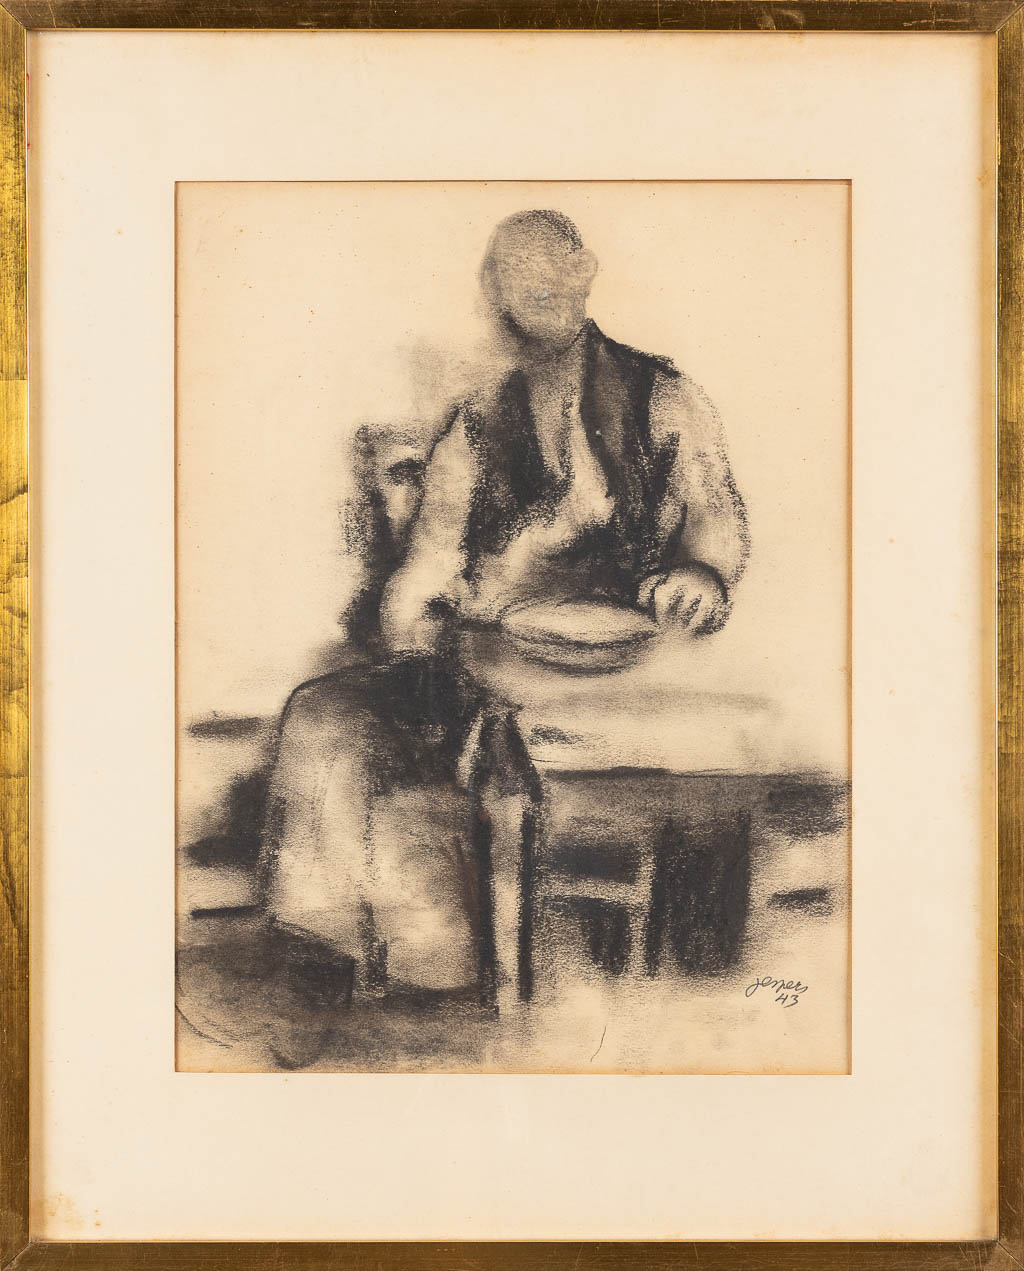 Floris JESPERS (1889-1965) 'Gezeten figuur' gouache op papier. 1943. 